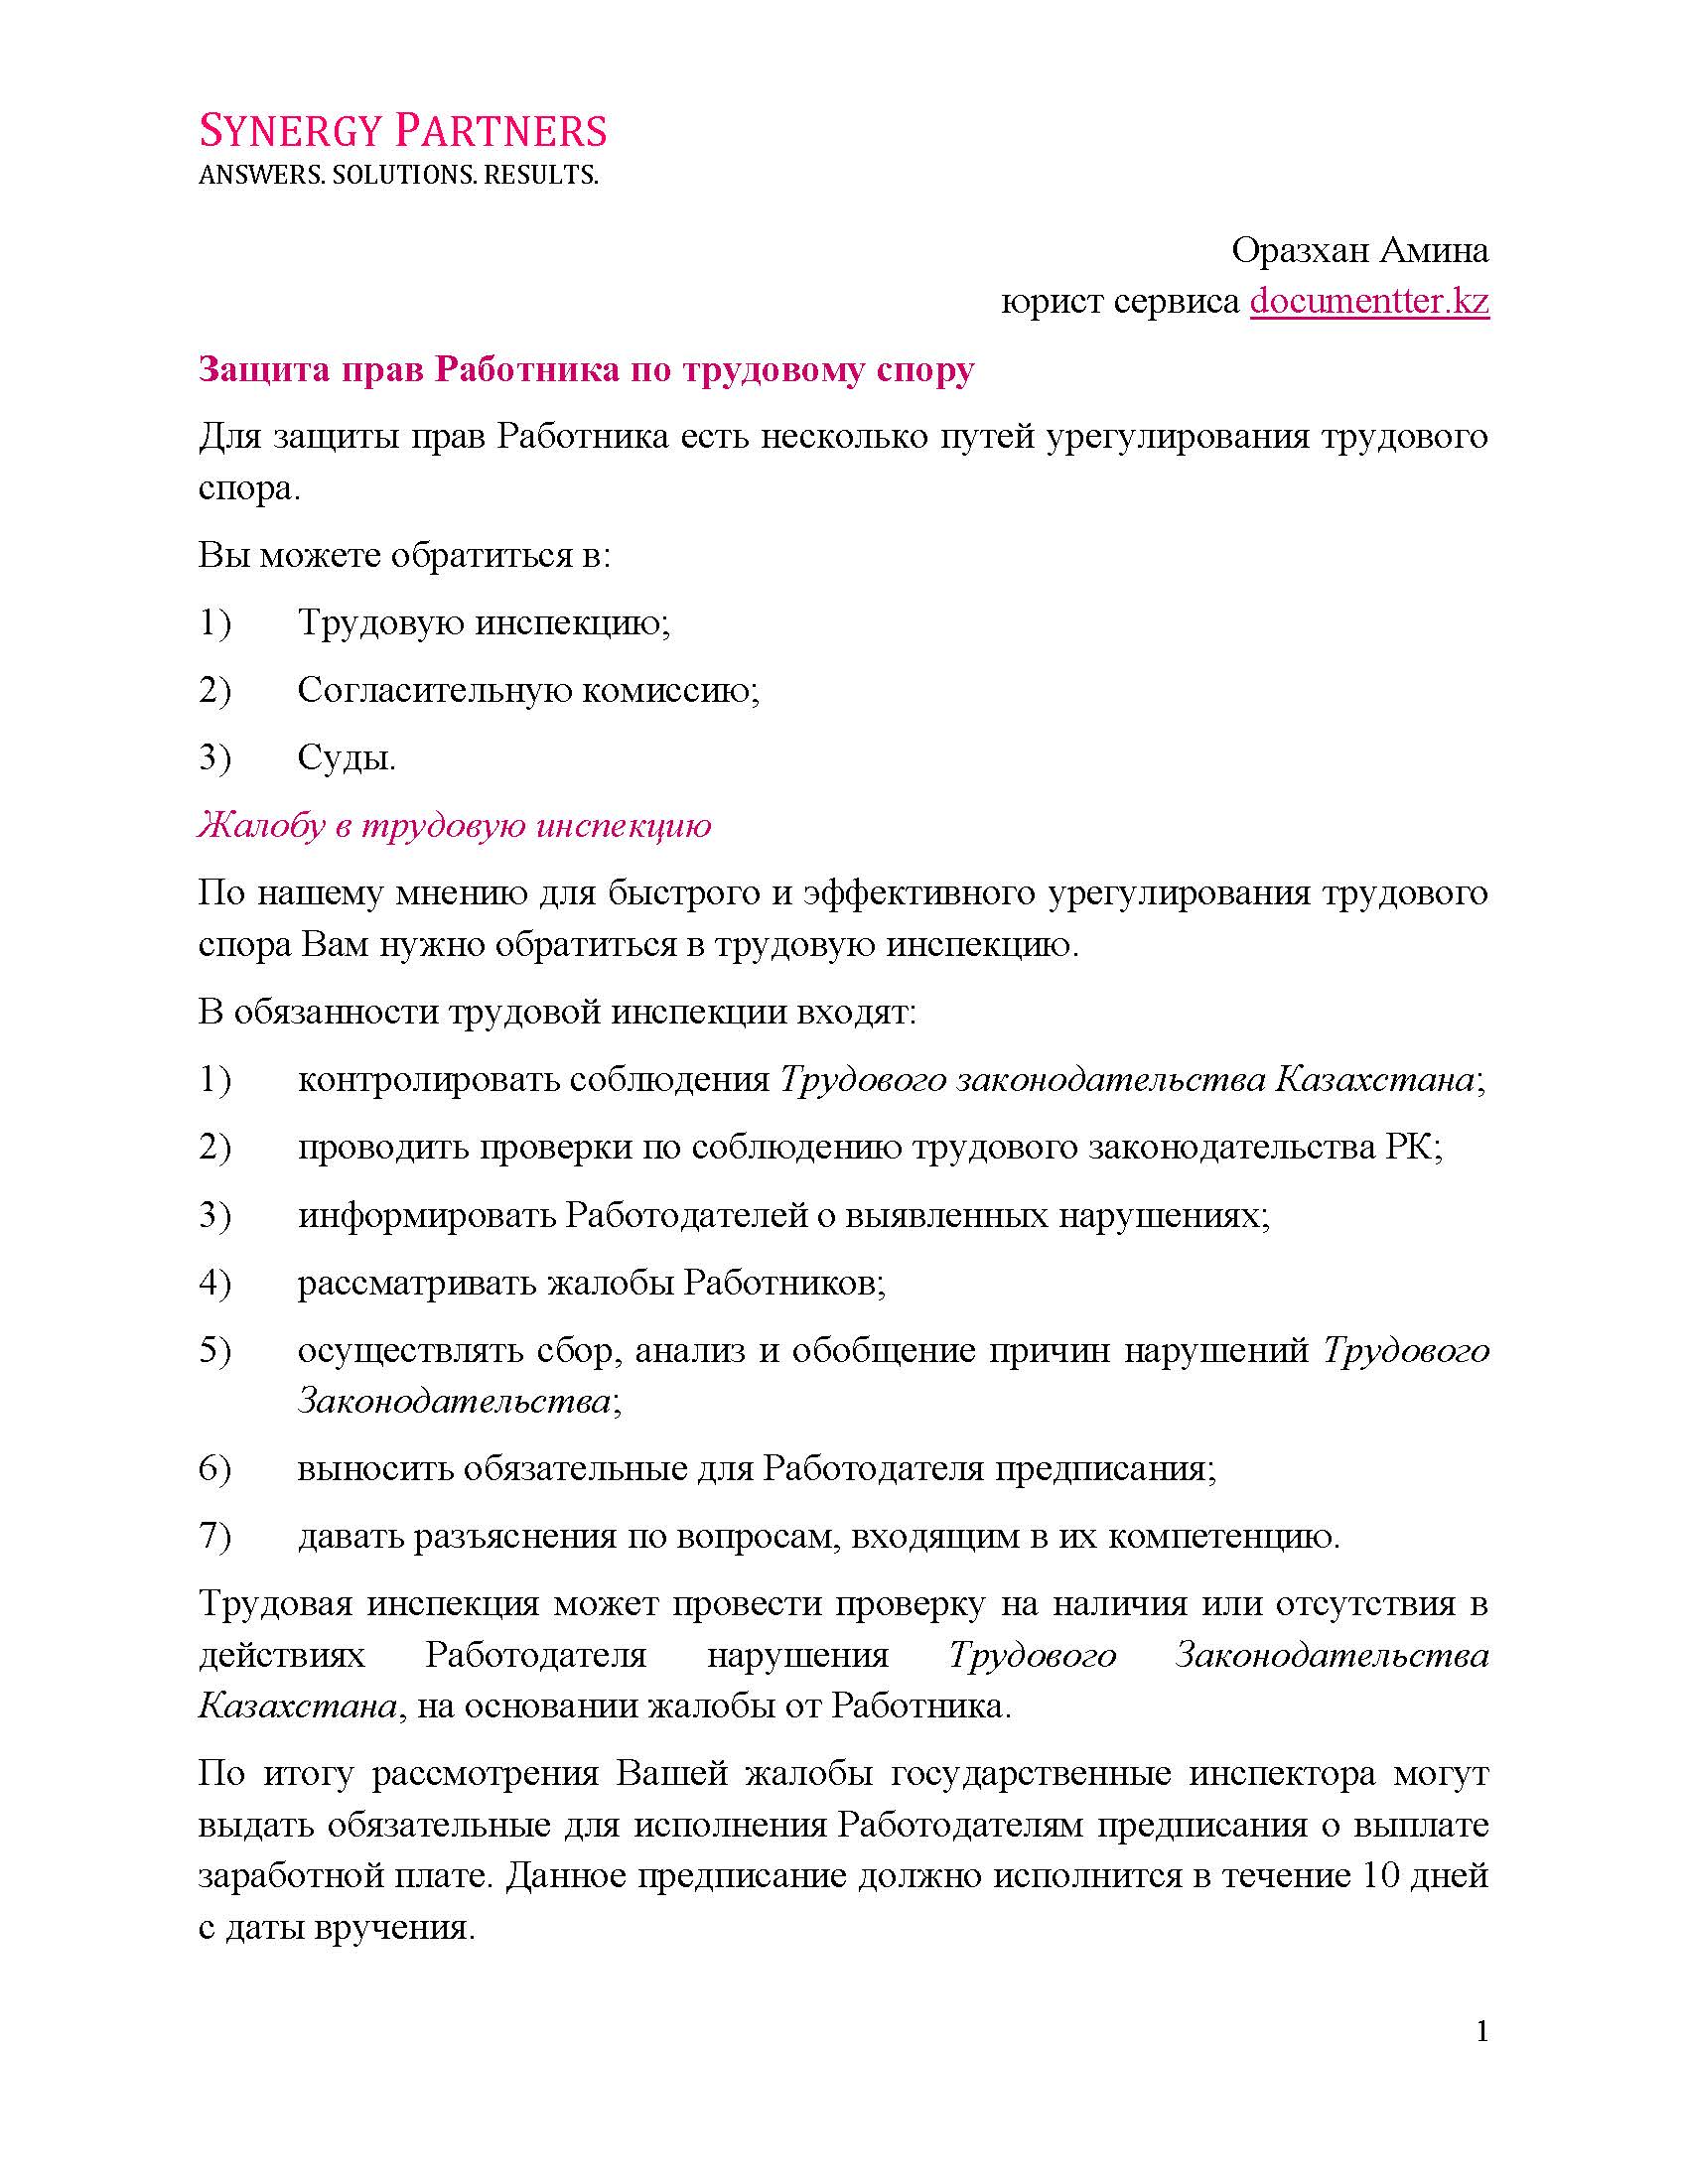 Защита прав работника описание | documentterkz.com в Казахстане